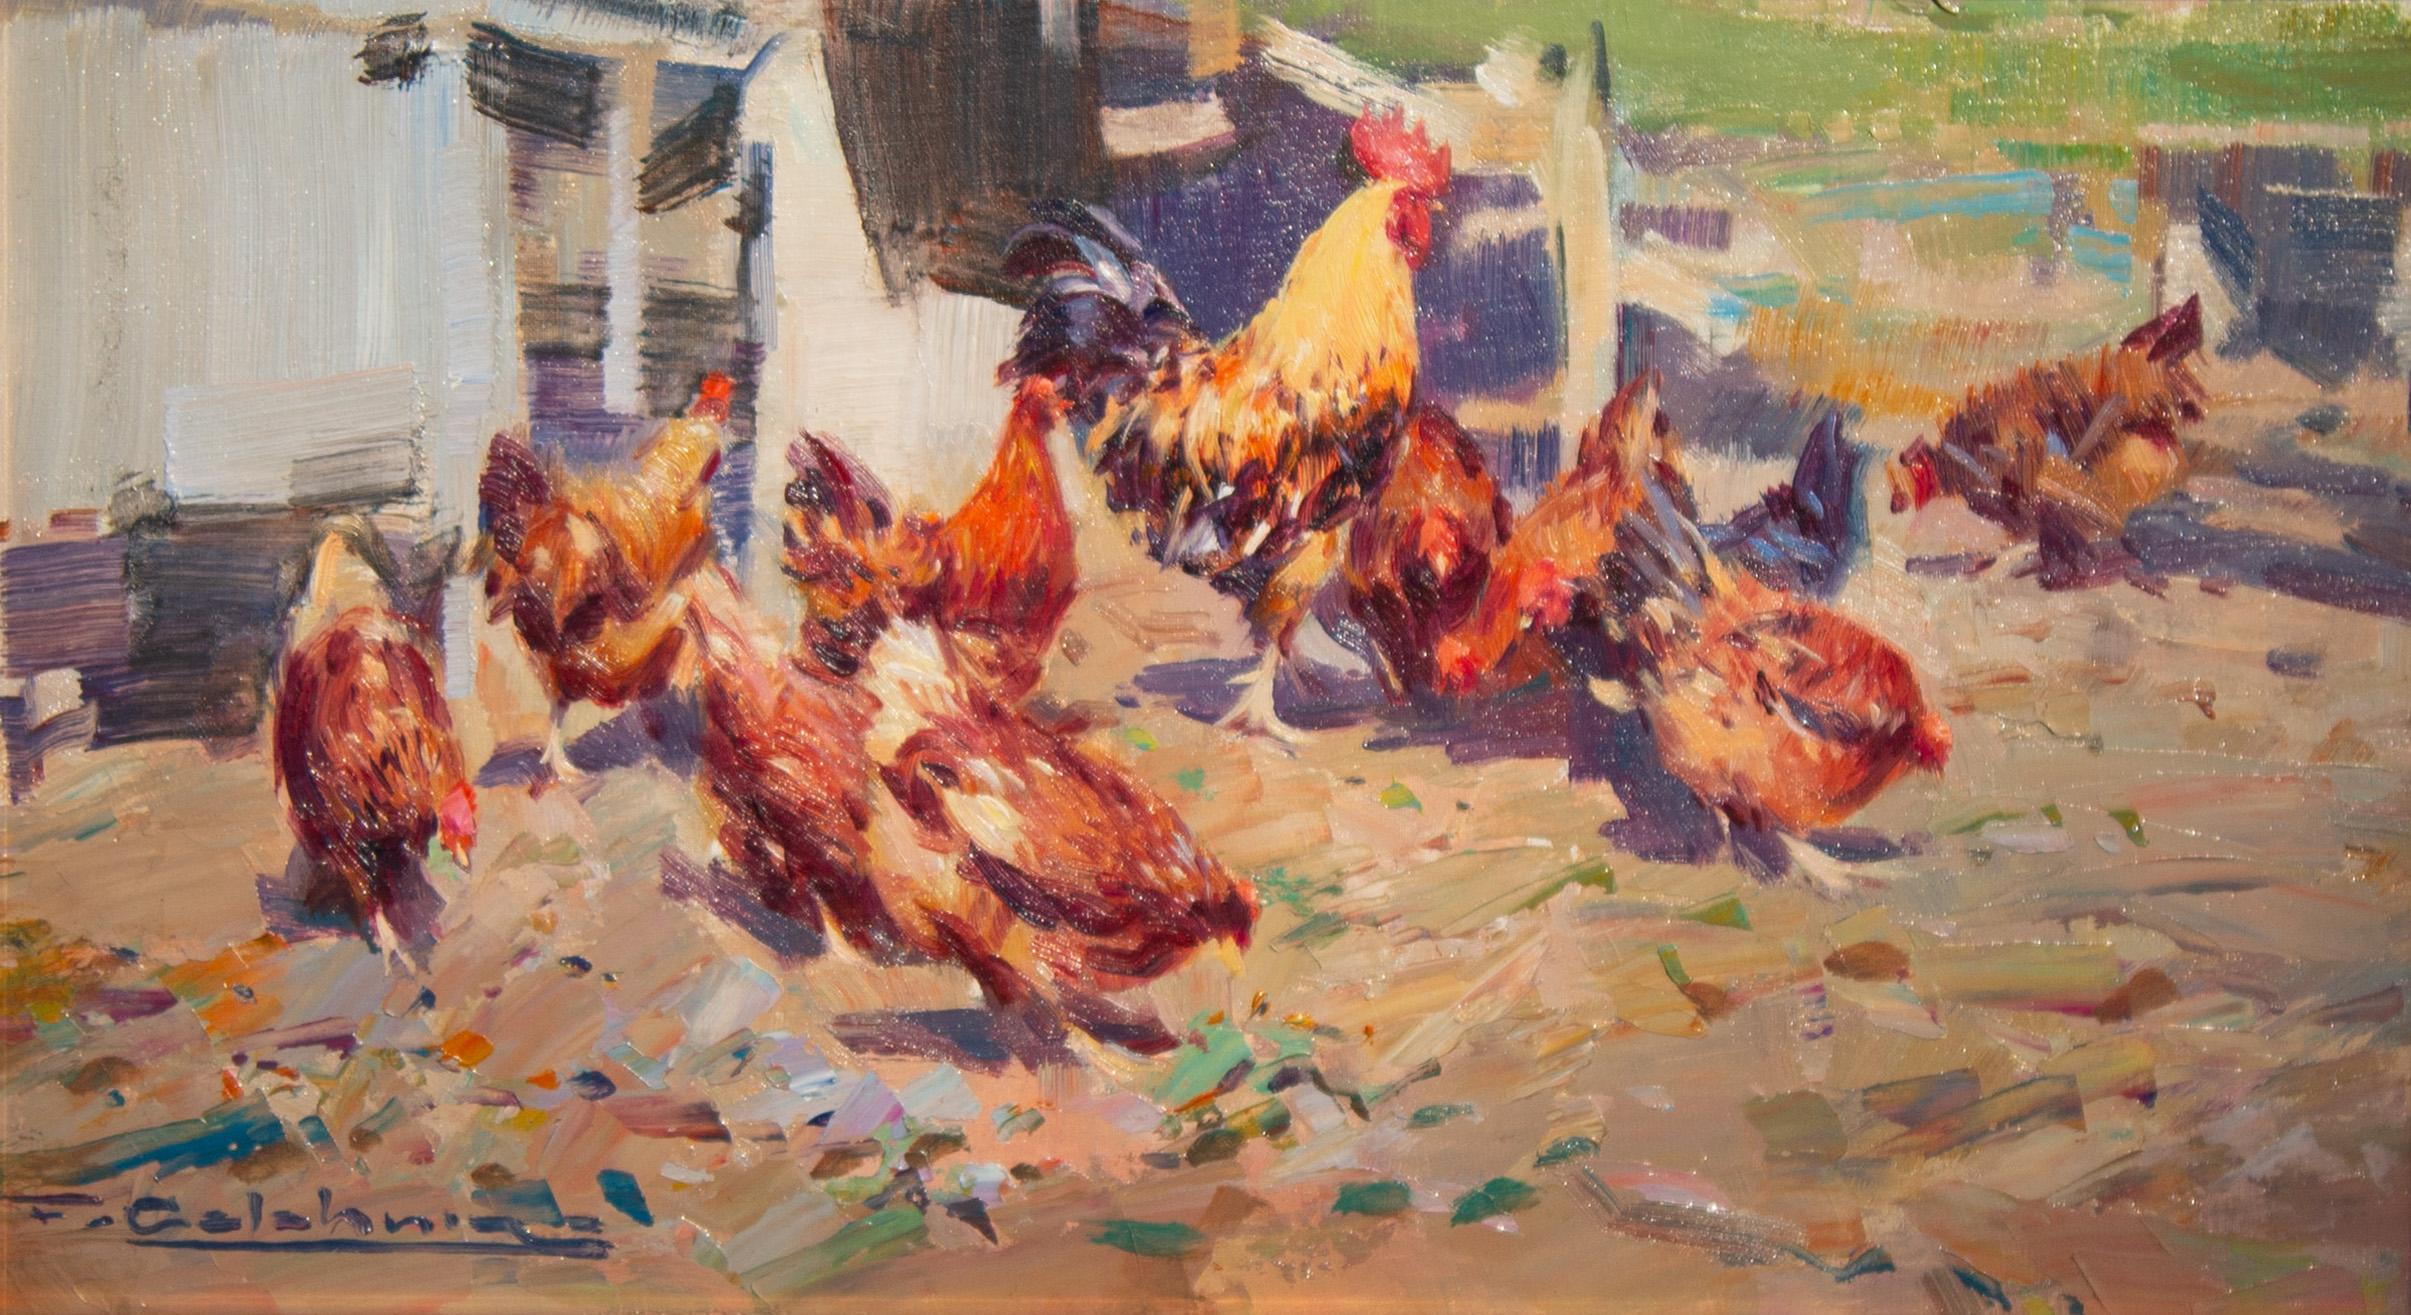 The Farmyard' Peinture contemporaine représentant des poules et un coq dans un décor de ferme. - Painting de Francisco Calabuig